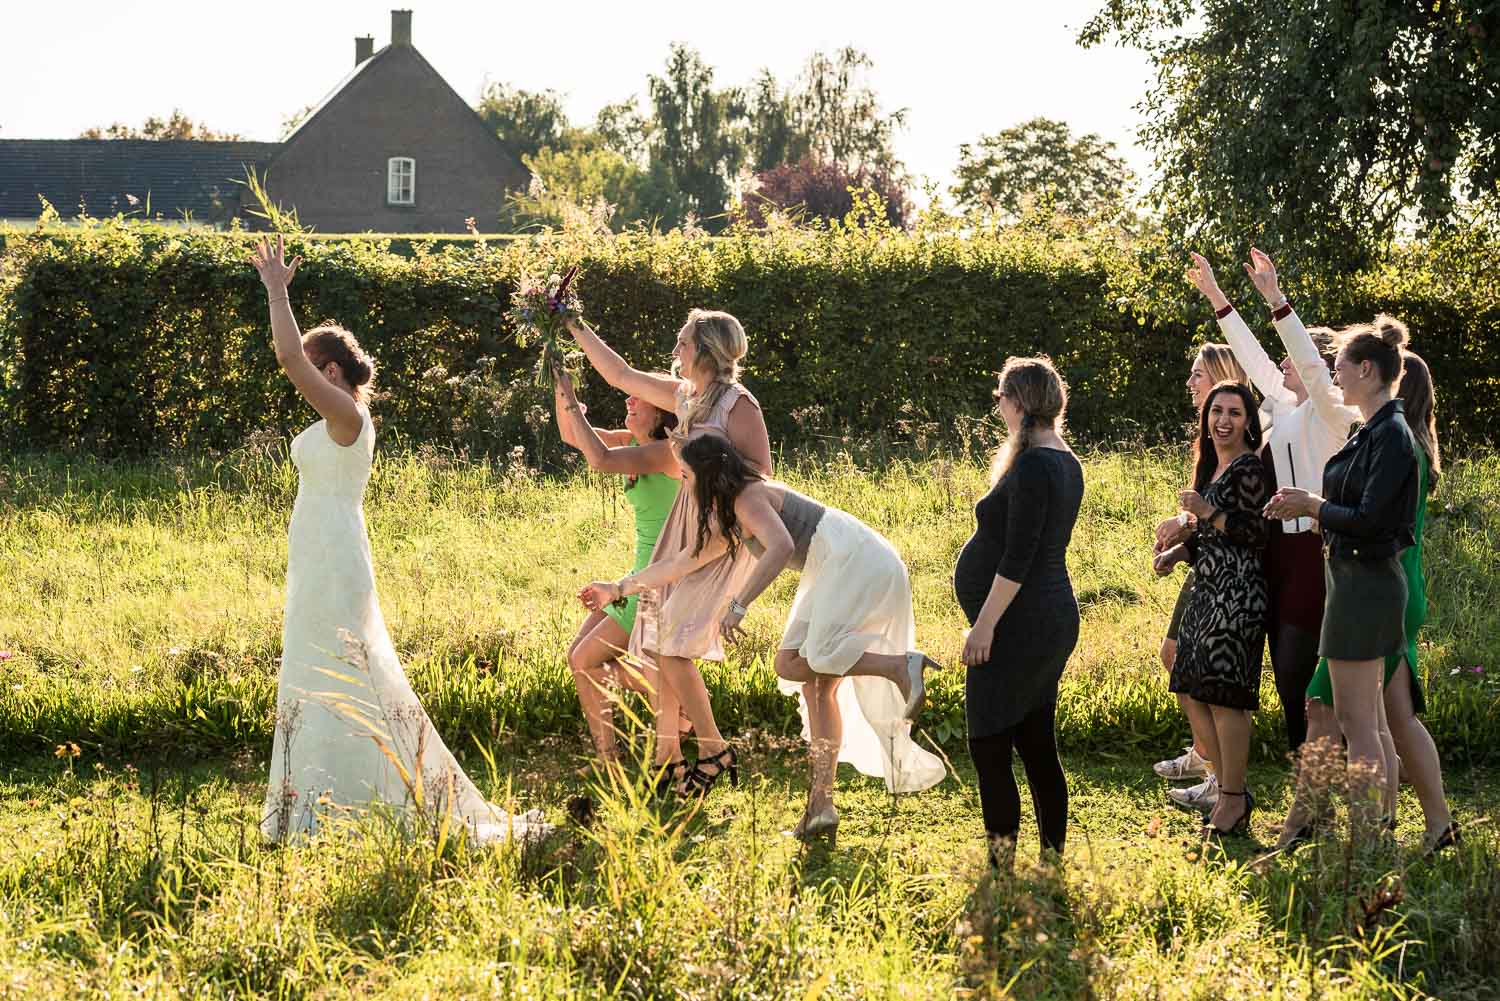 Vangen van bruidsboeket gemaakt door Cfoto trouwfotograaf uit Brabant bij Benedensas in de heen